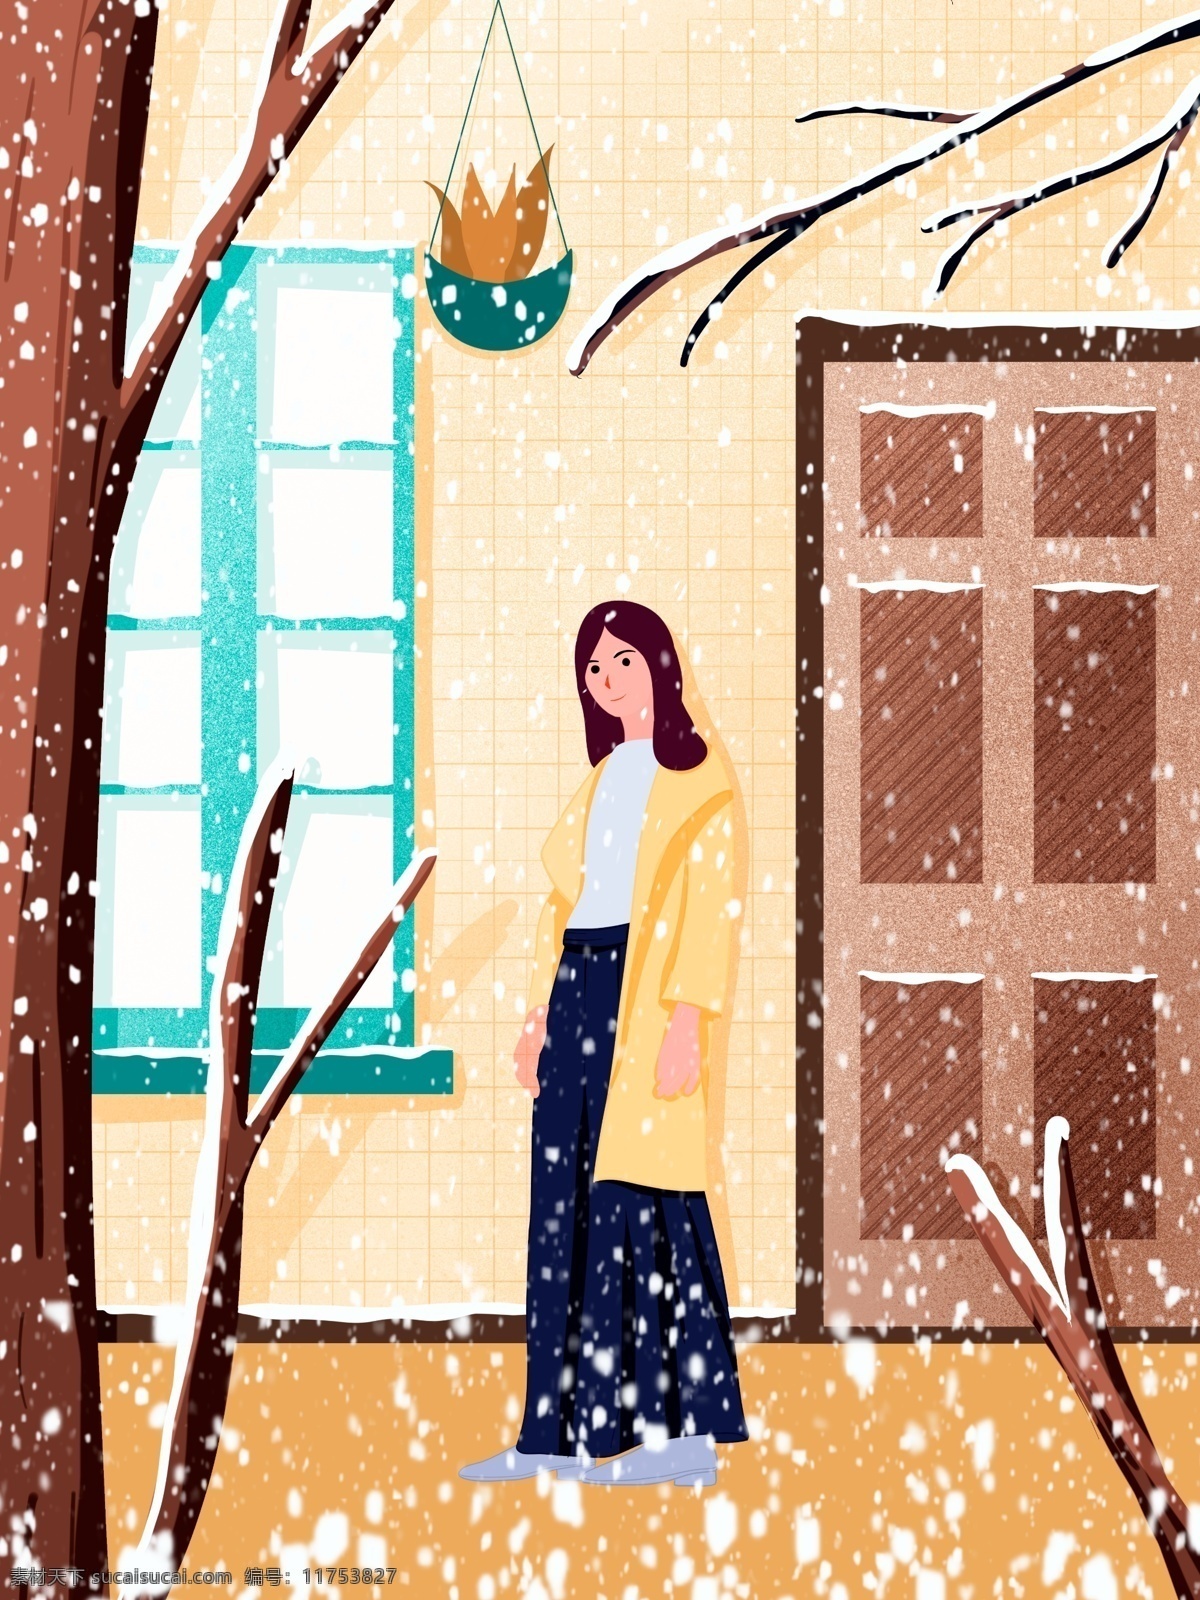 冬季 雪景 手绘 海报 插画 壁纸 下雪 banner 大雪 小雪 雪